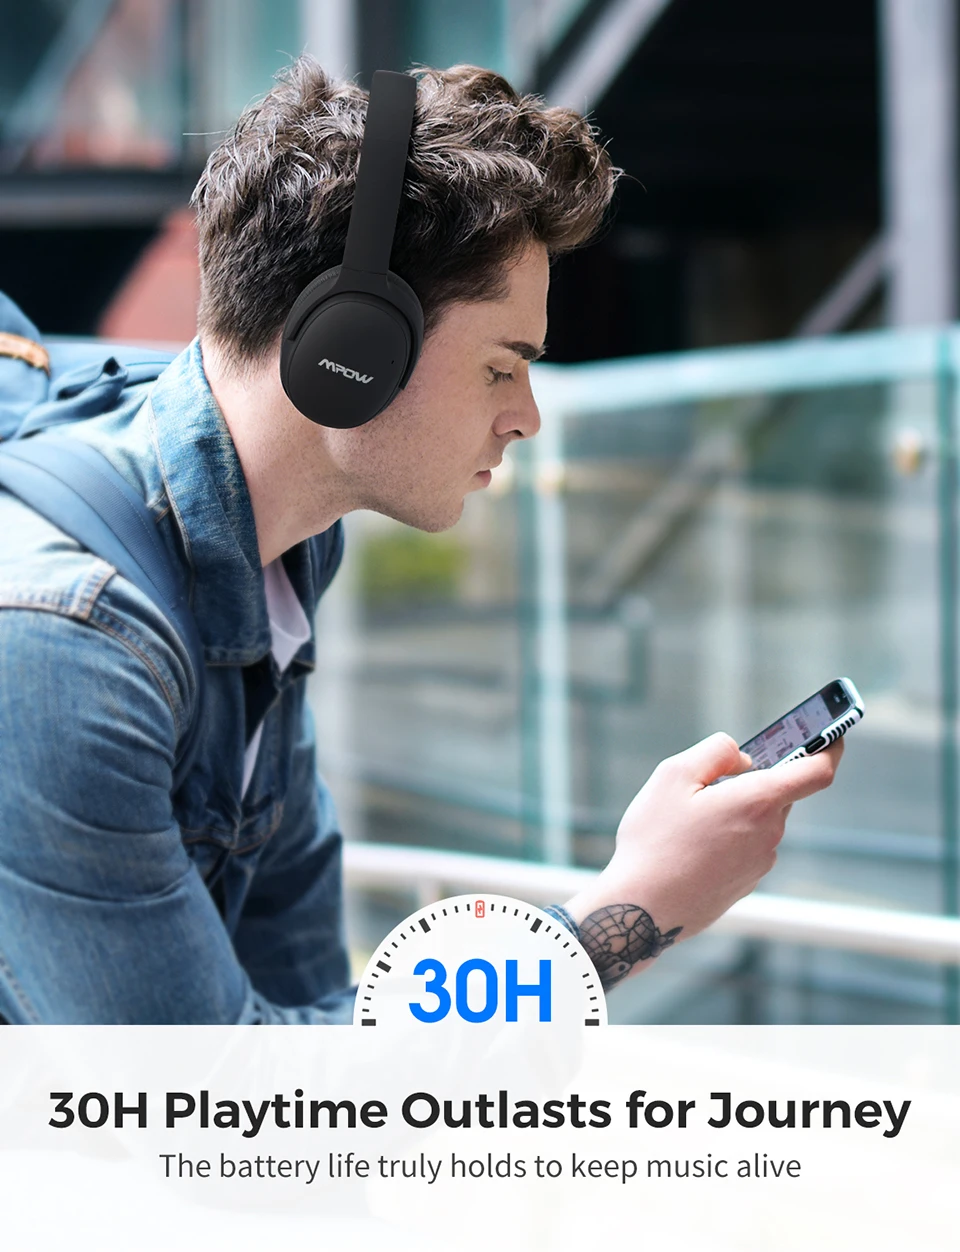 Mpow H10 ANC беспроводные наушники Bluetooth гарнитура с шумоподавлением hi-fi стерео звук двойной микрофон с 30H время воспроизведения для телефона PK H5